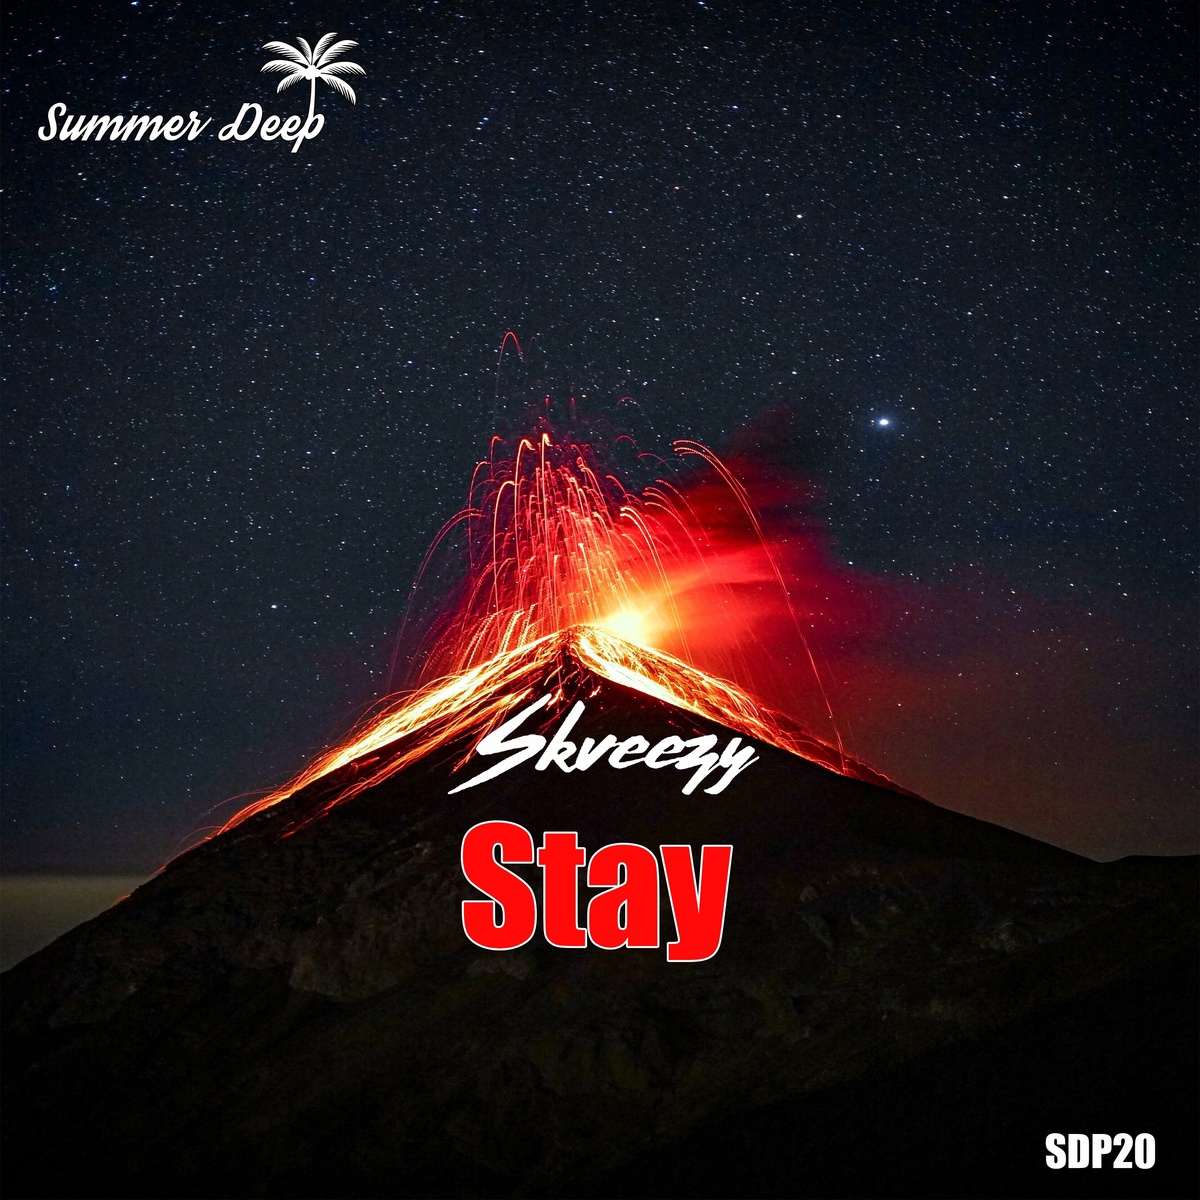 Skveezy - Stay (Original Mix)